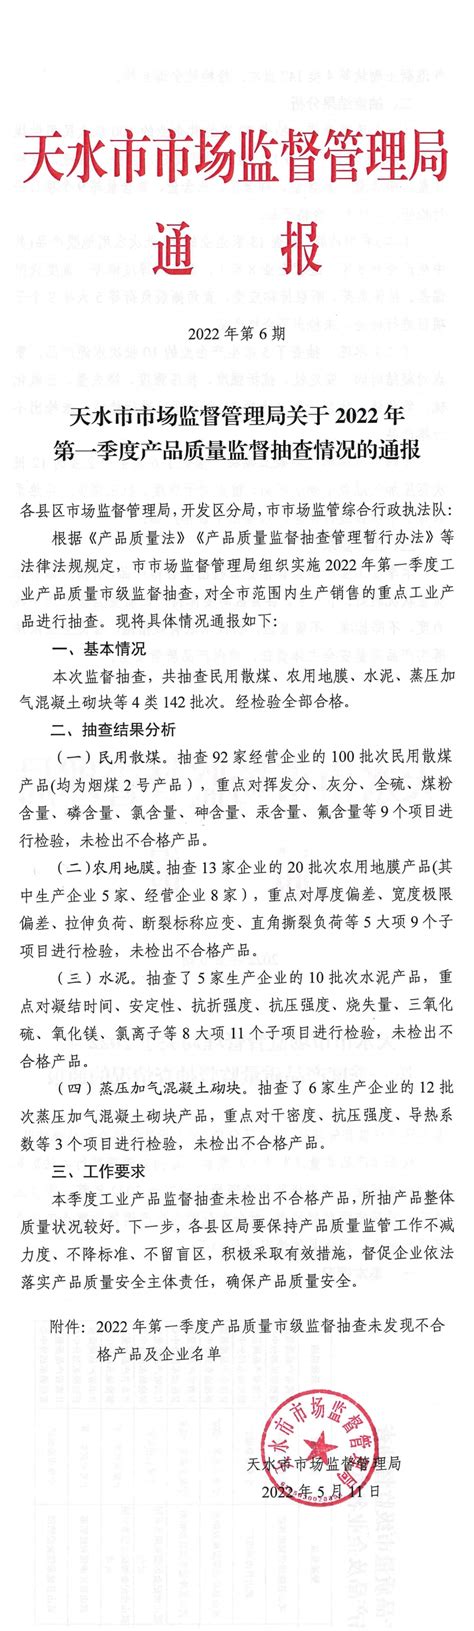 甘肃省天水市市场监管局通报2022年第一季度产品质量监督抽查情况-中国质量新闻网